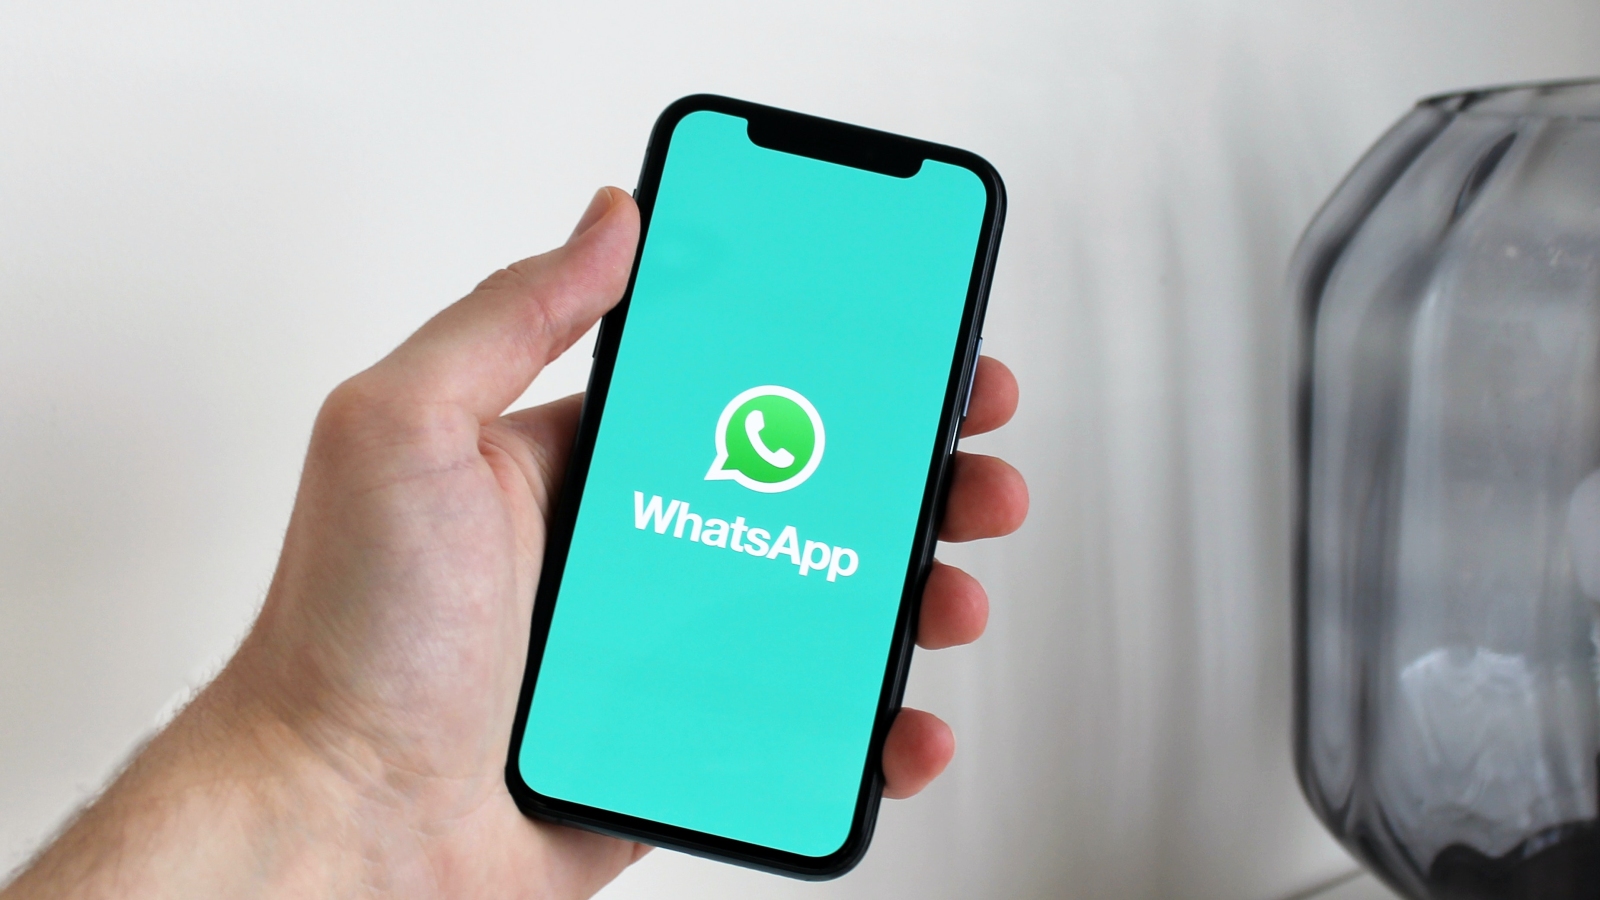 WhatsApp не работает, и сообщения не отправляются — вот что мы знаем